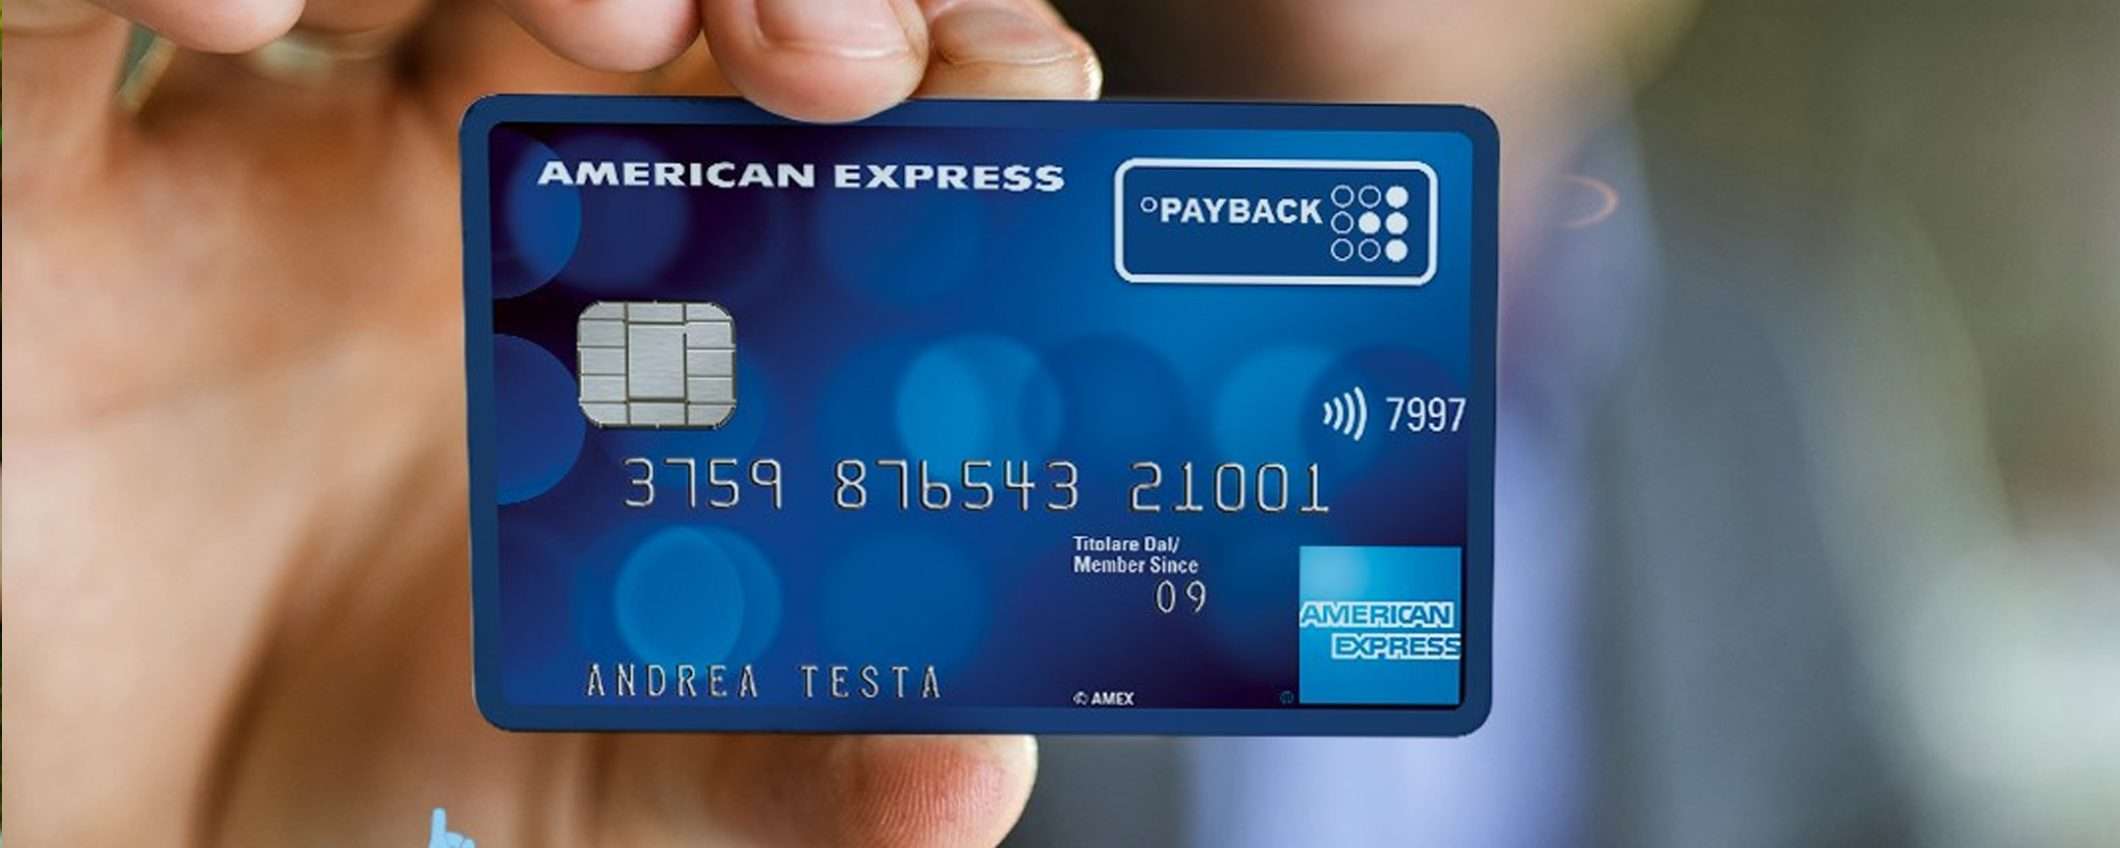 American Express + PAYBACK: come ottenere 50€ di sconto